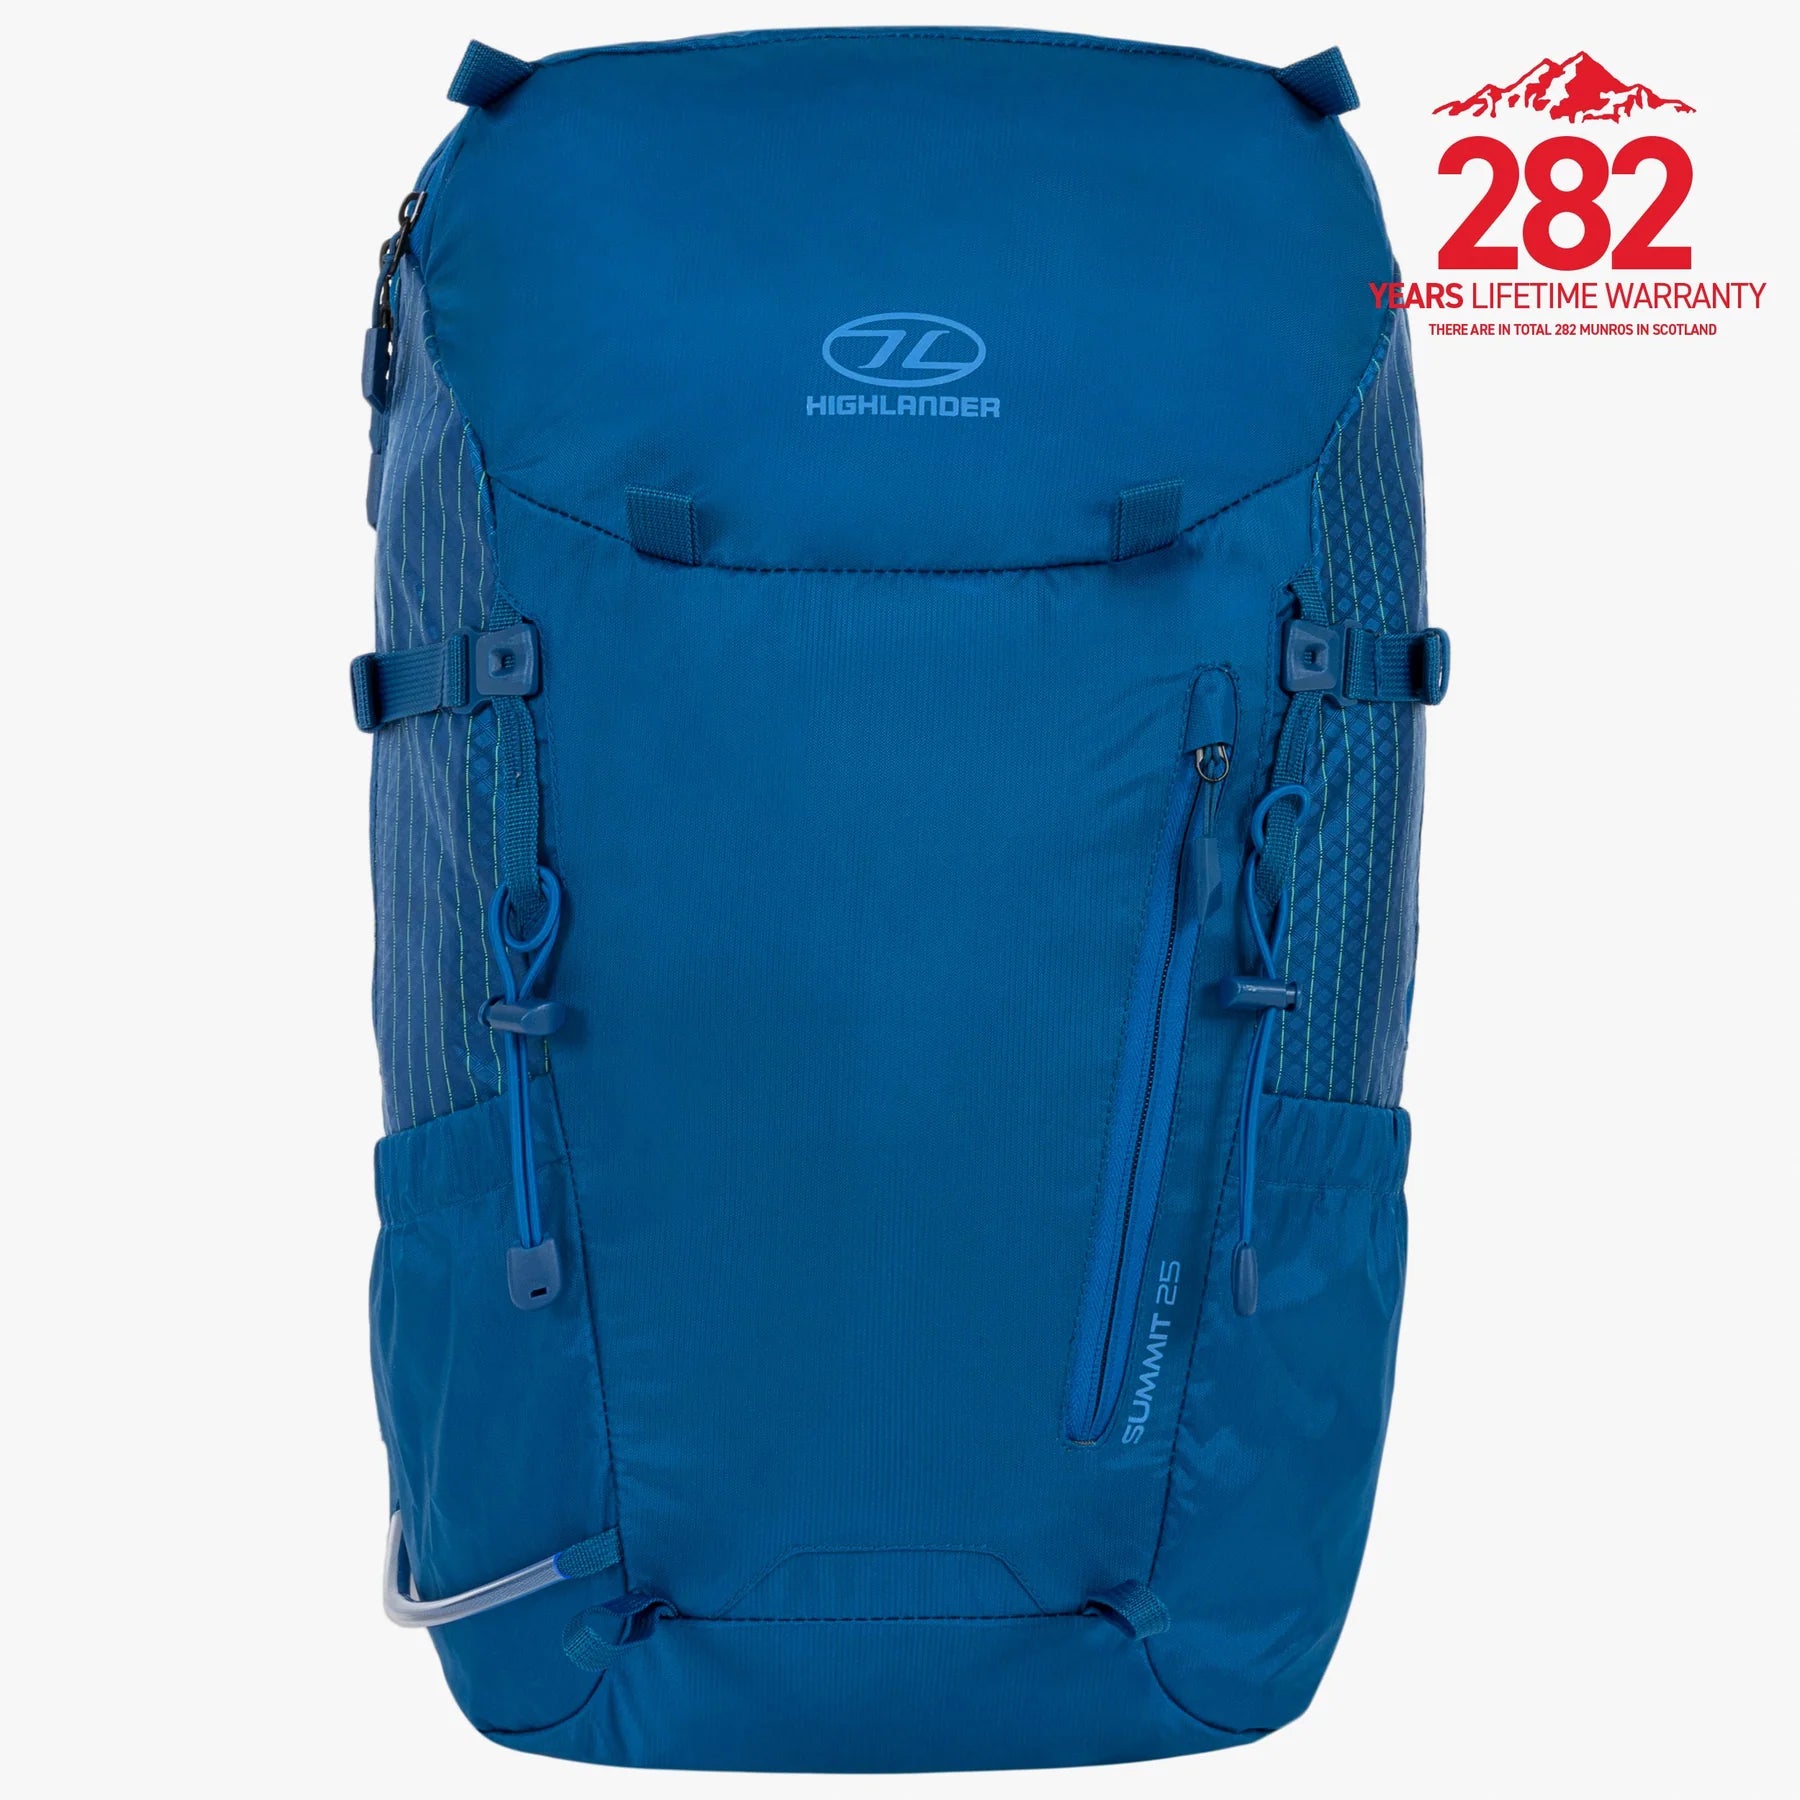 Highlander Summitl 25L Backpack